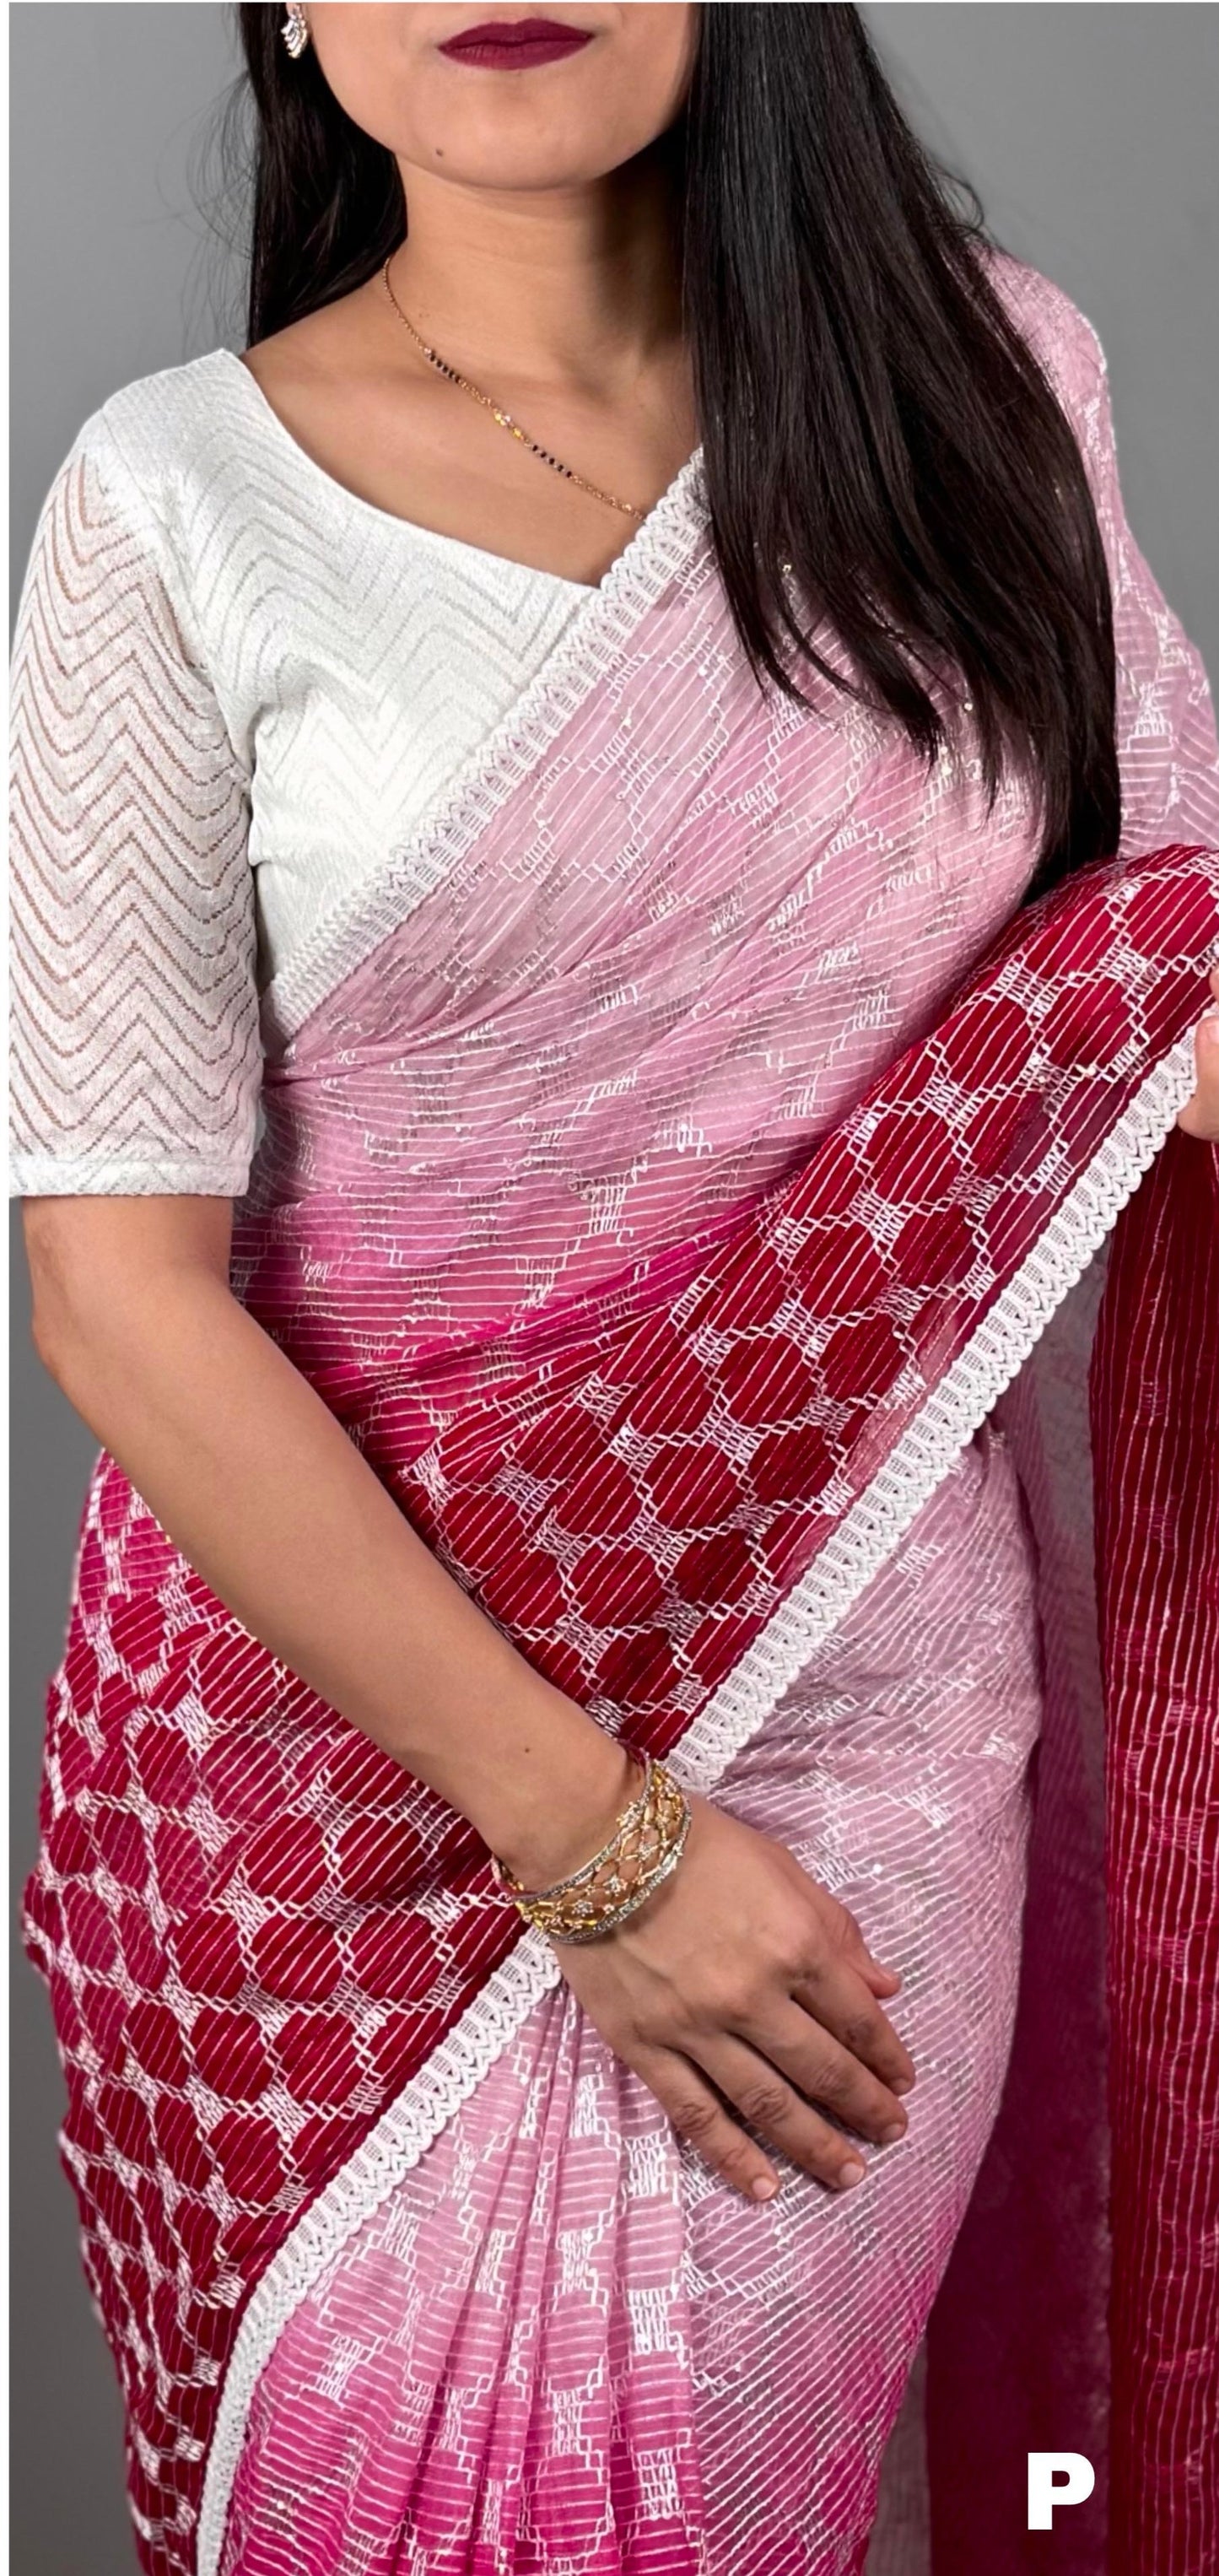 Women's SATRANGI Padding Colour Sequins Work Saree with Blouse